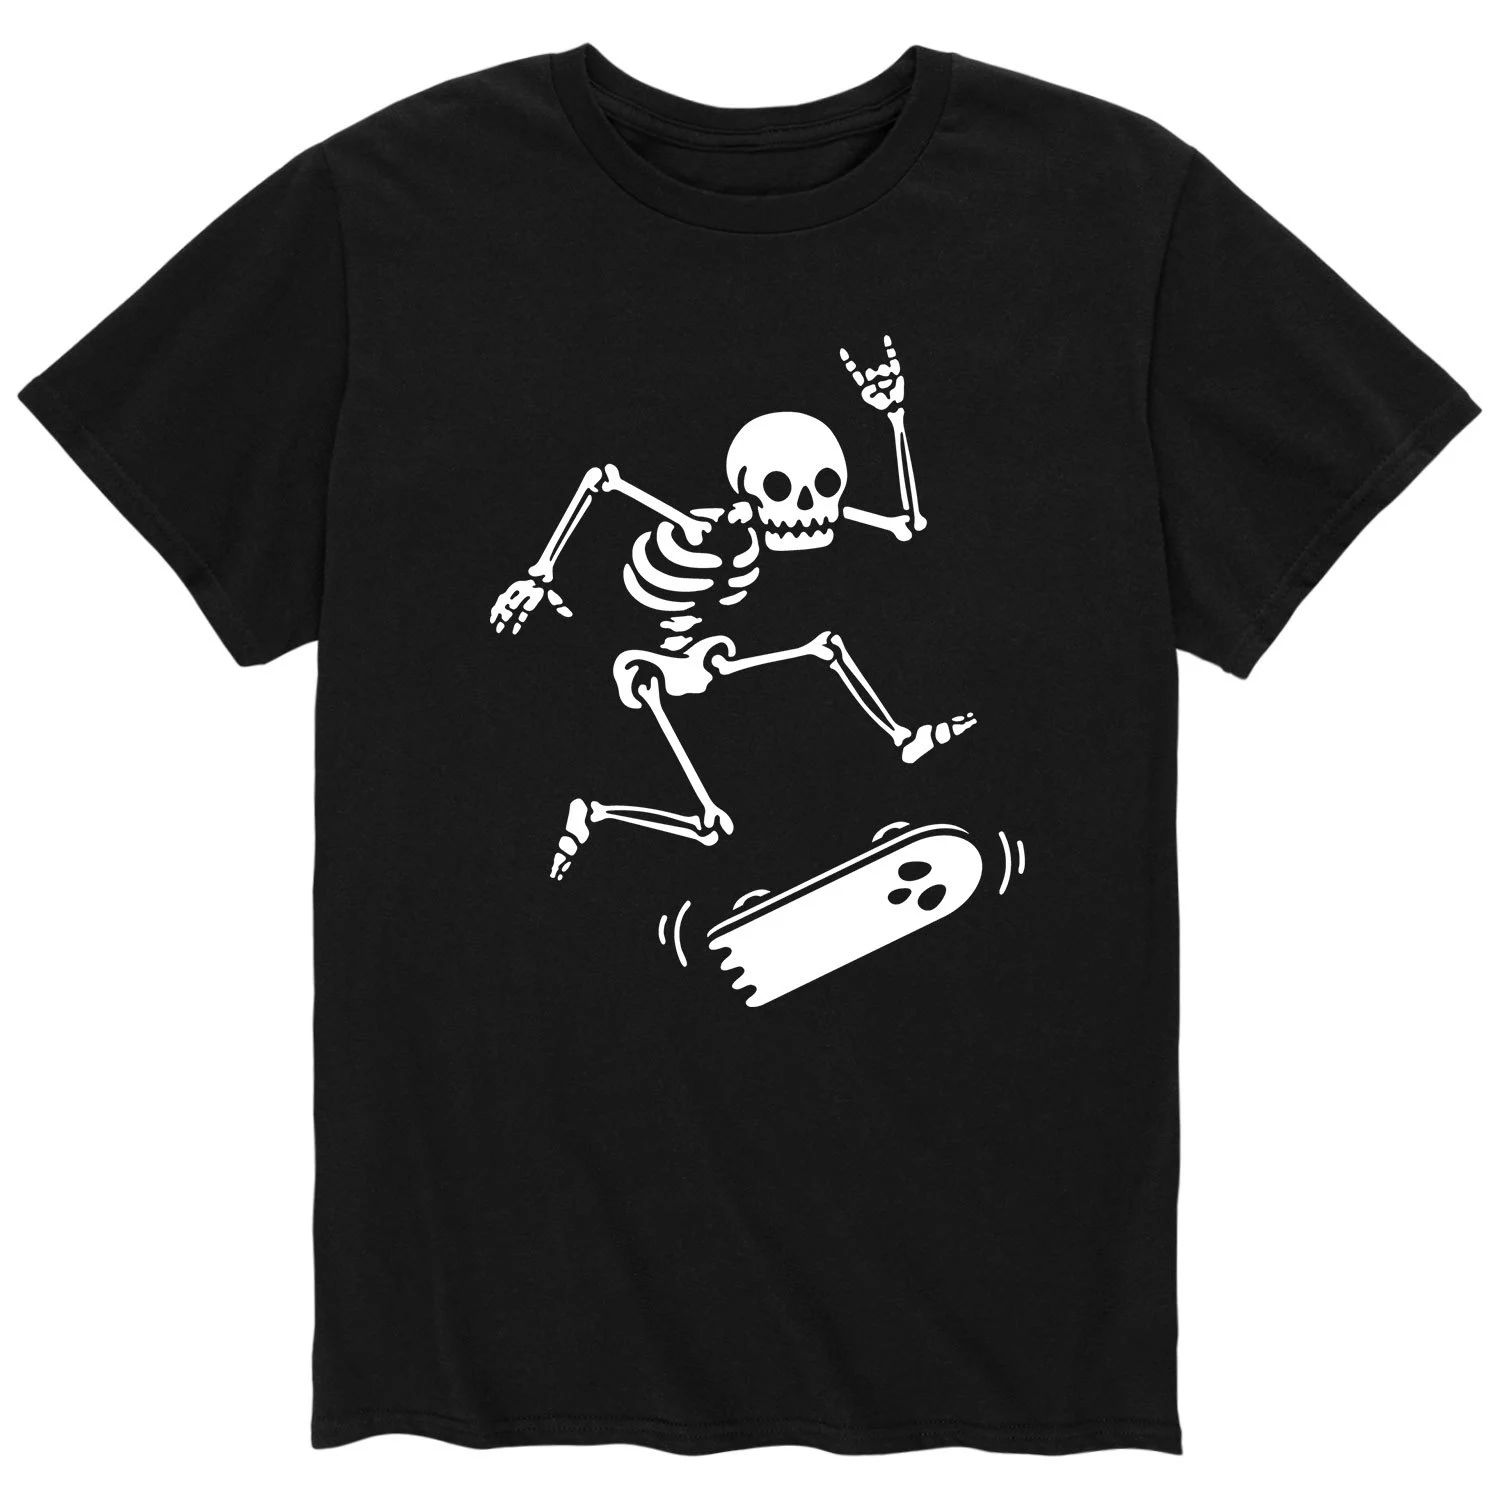 Мужская футболка со скелетом для скейтбординга Licensed Character мужская футболка death before decaf с неоновым скелетом licensed character